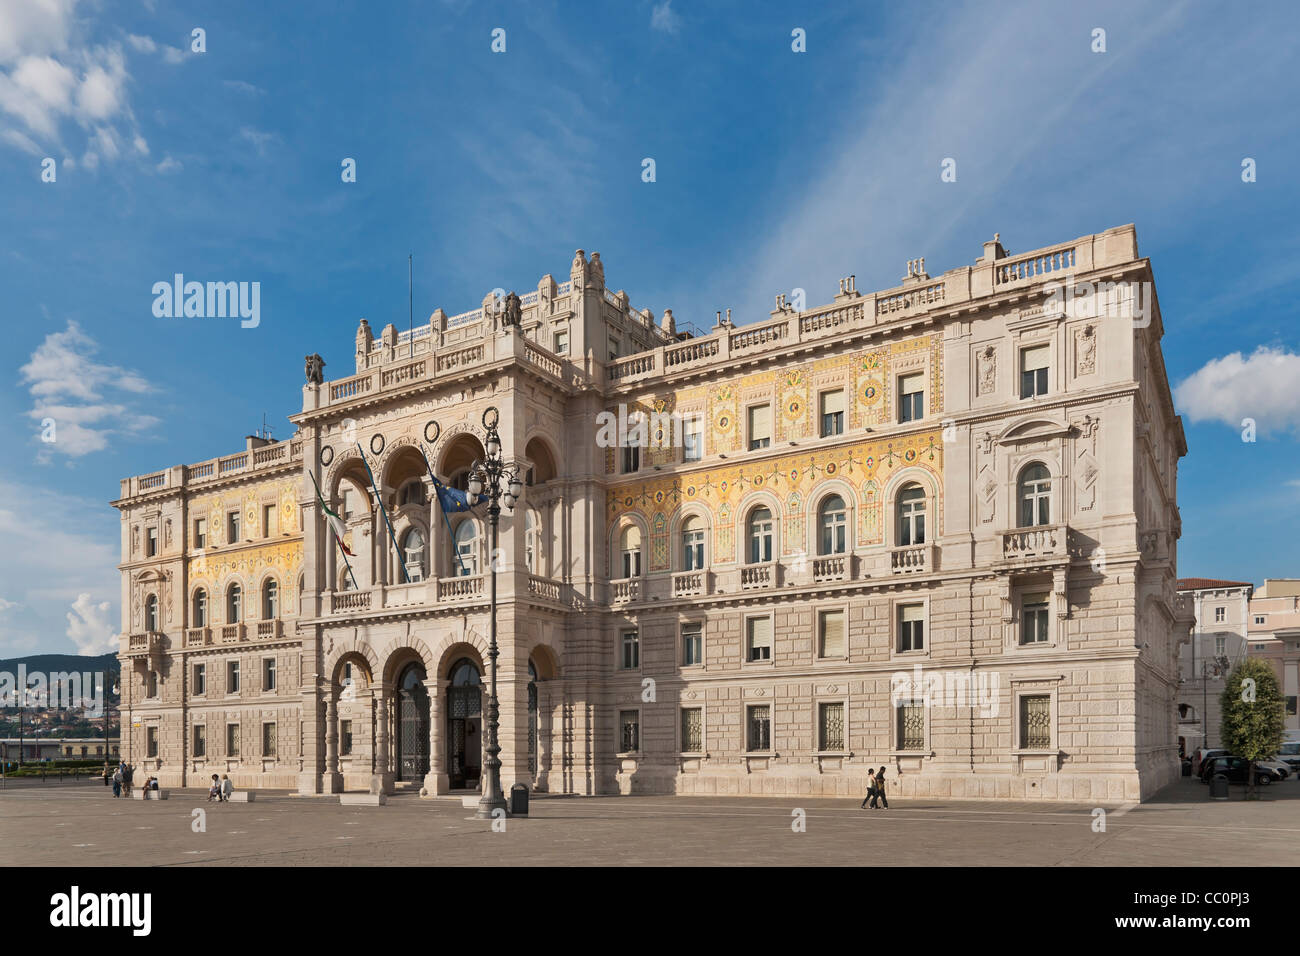 Government palace, the Palazzo del Governo, is located at Piazza Unita d'Italia,Trieste, Friuli-Venezia Giulia, Italy, Europe Stock Photo